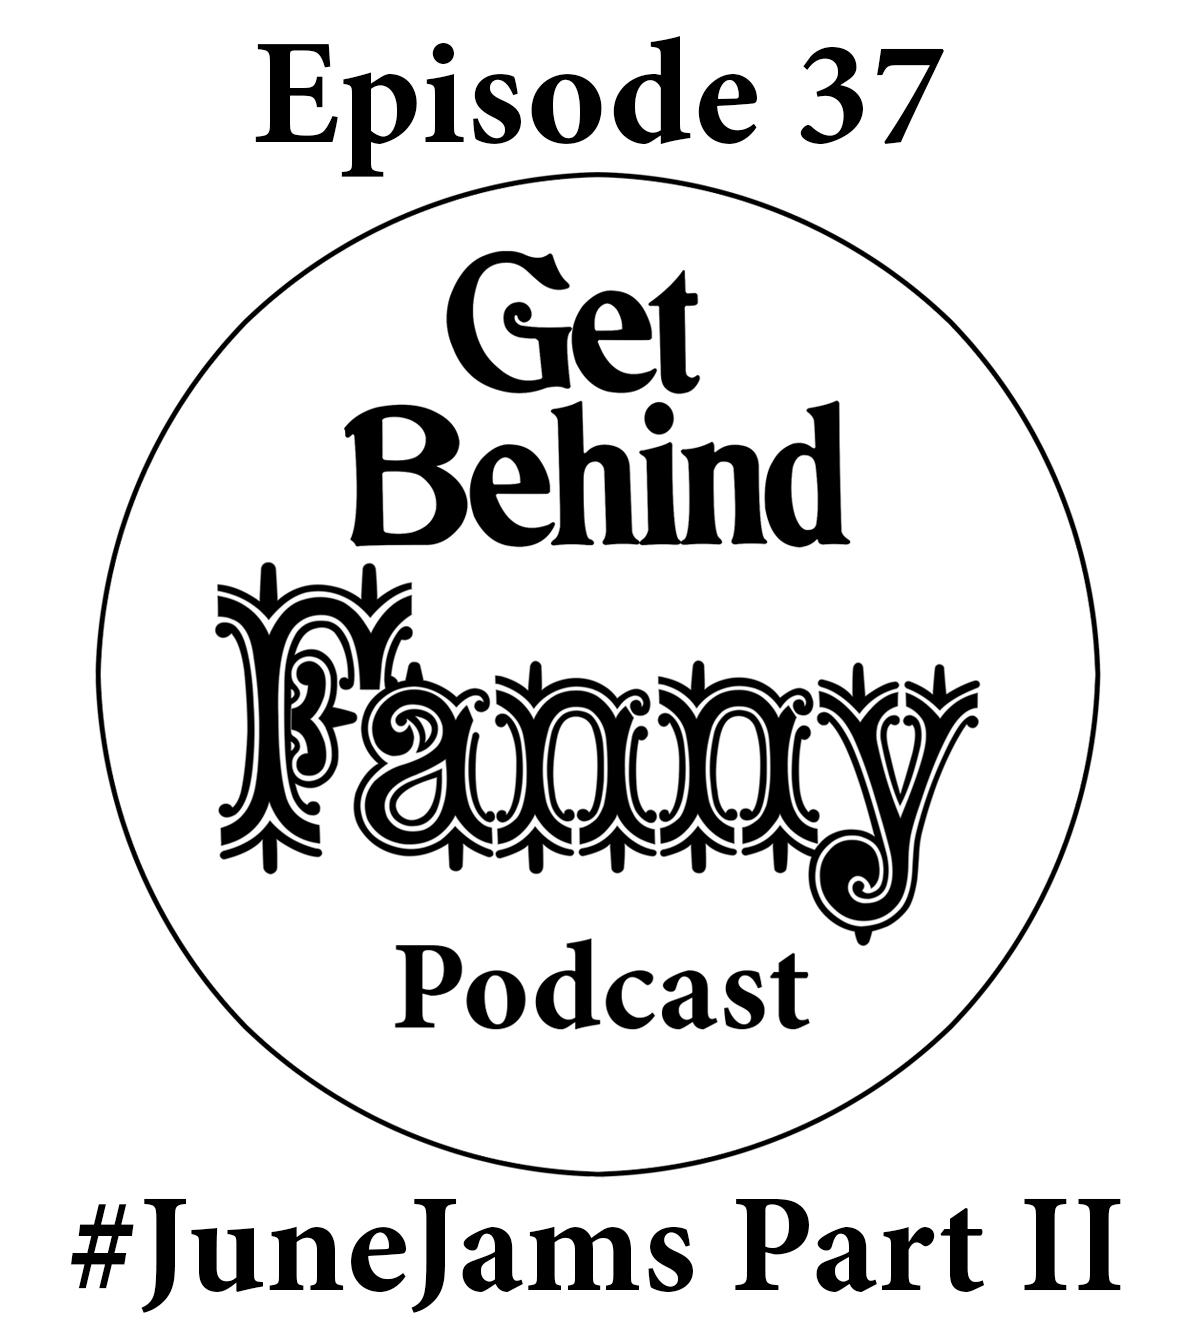 Get Behind Fanny: Episode 37